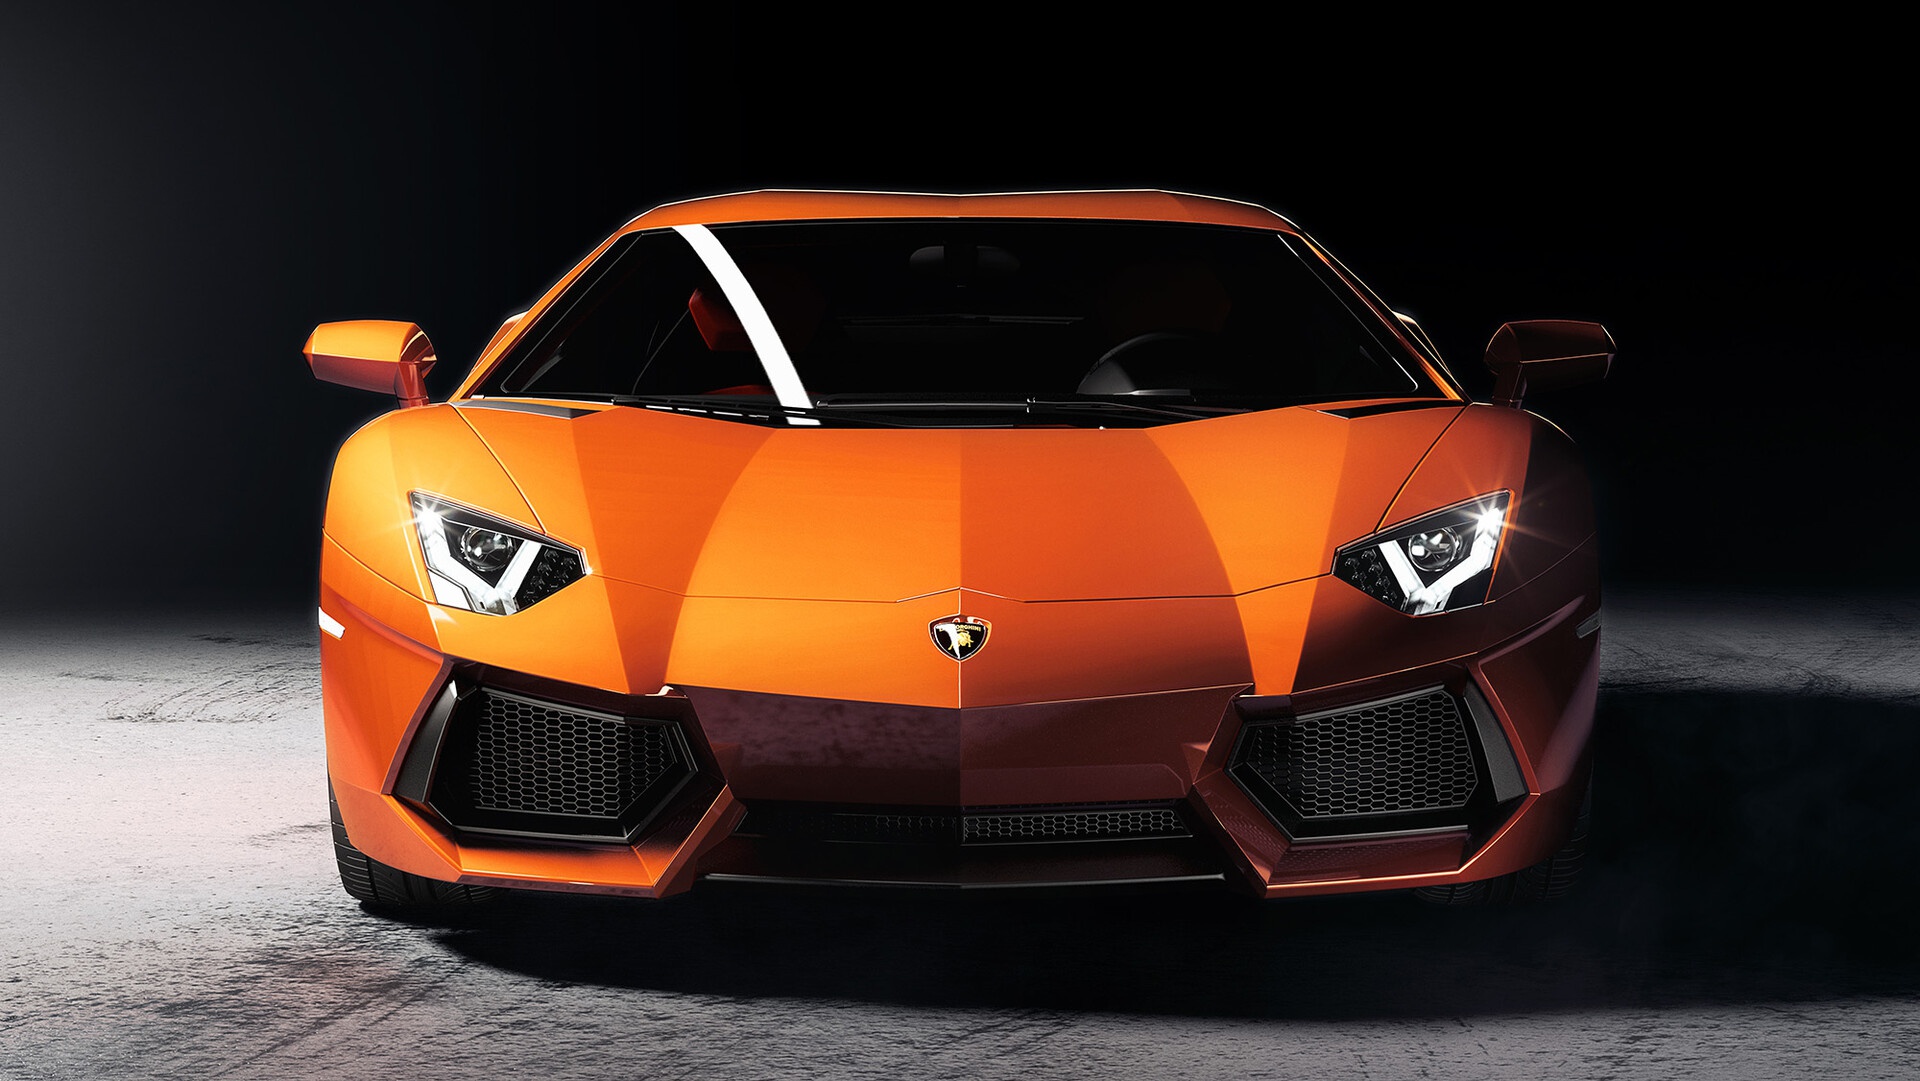 Download mobile wallpaper Lamborghini, Car, Supercar, Lamborghini Aventador, Vehicles, Orange Car for free.